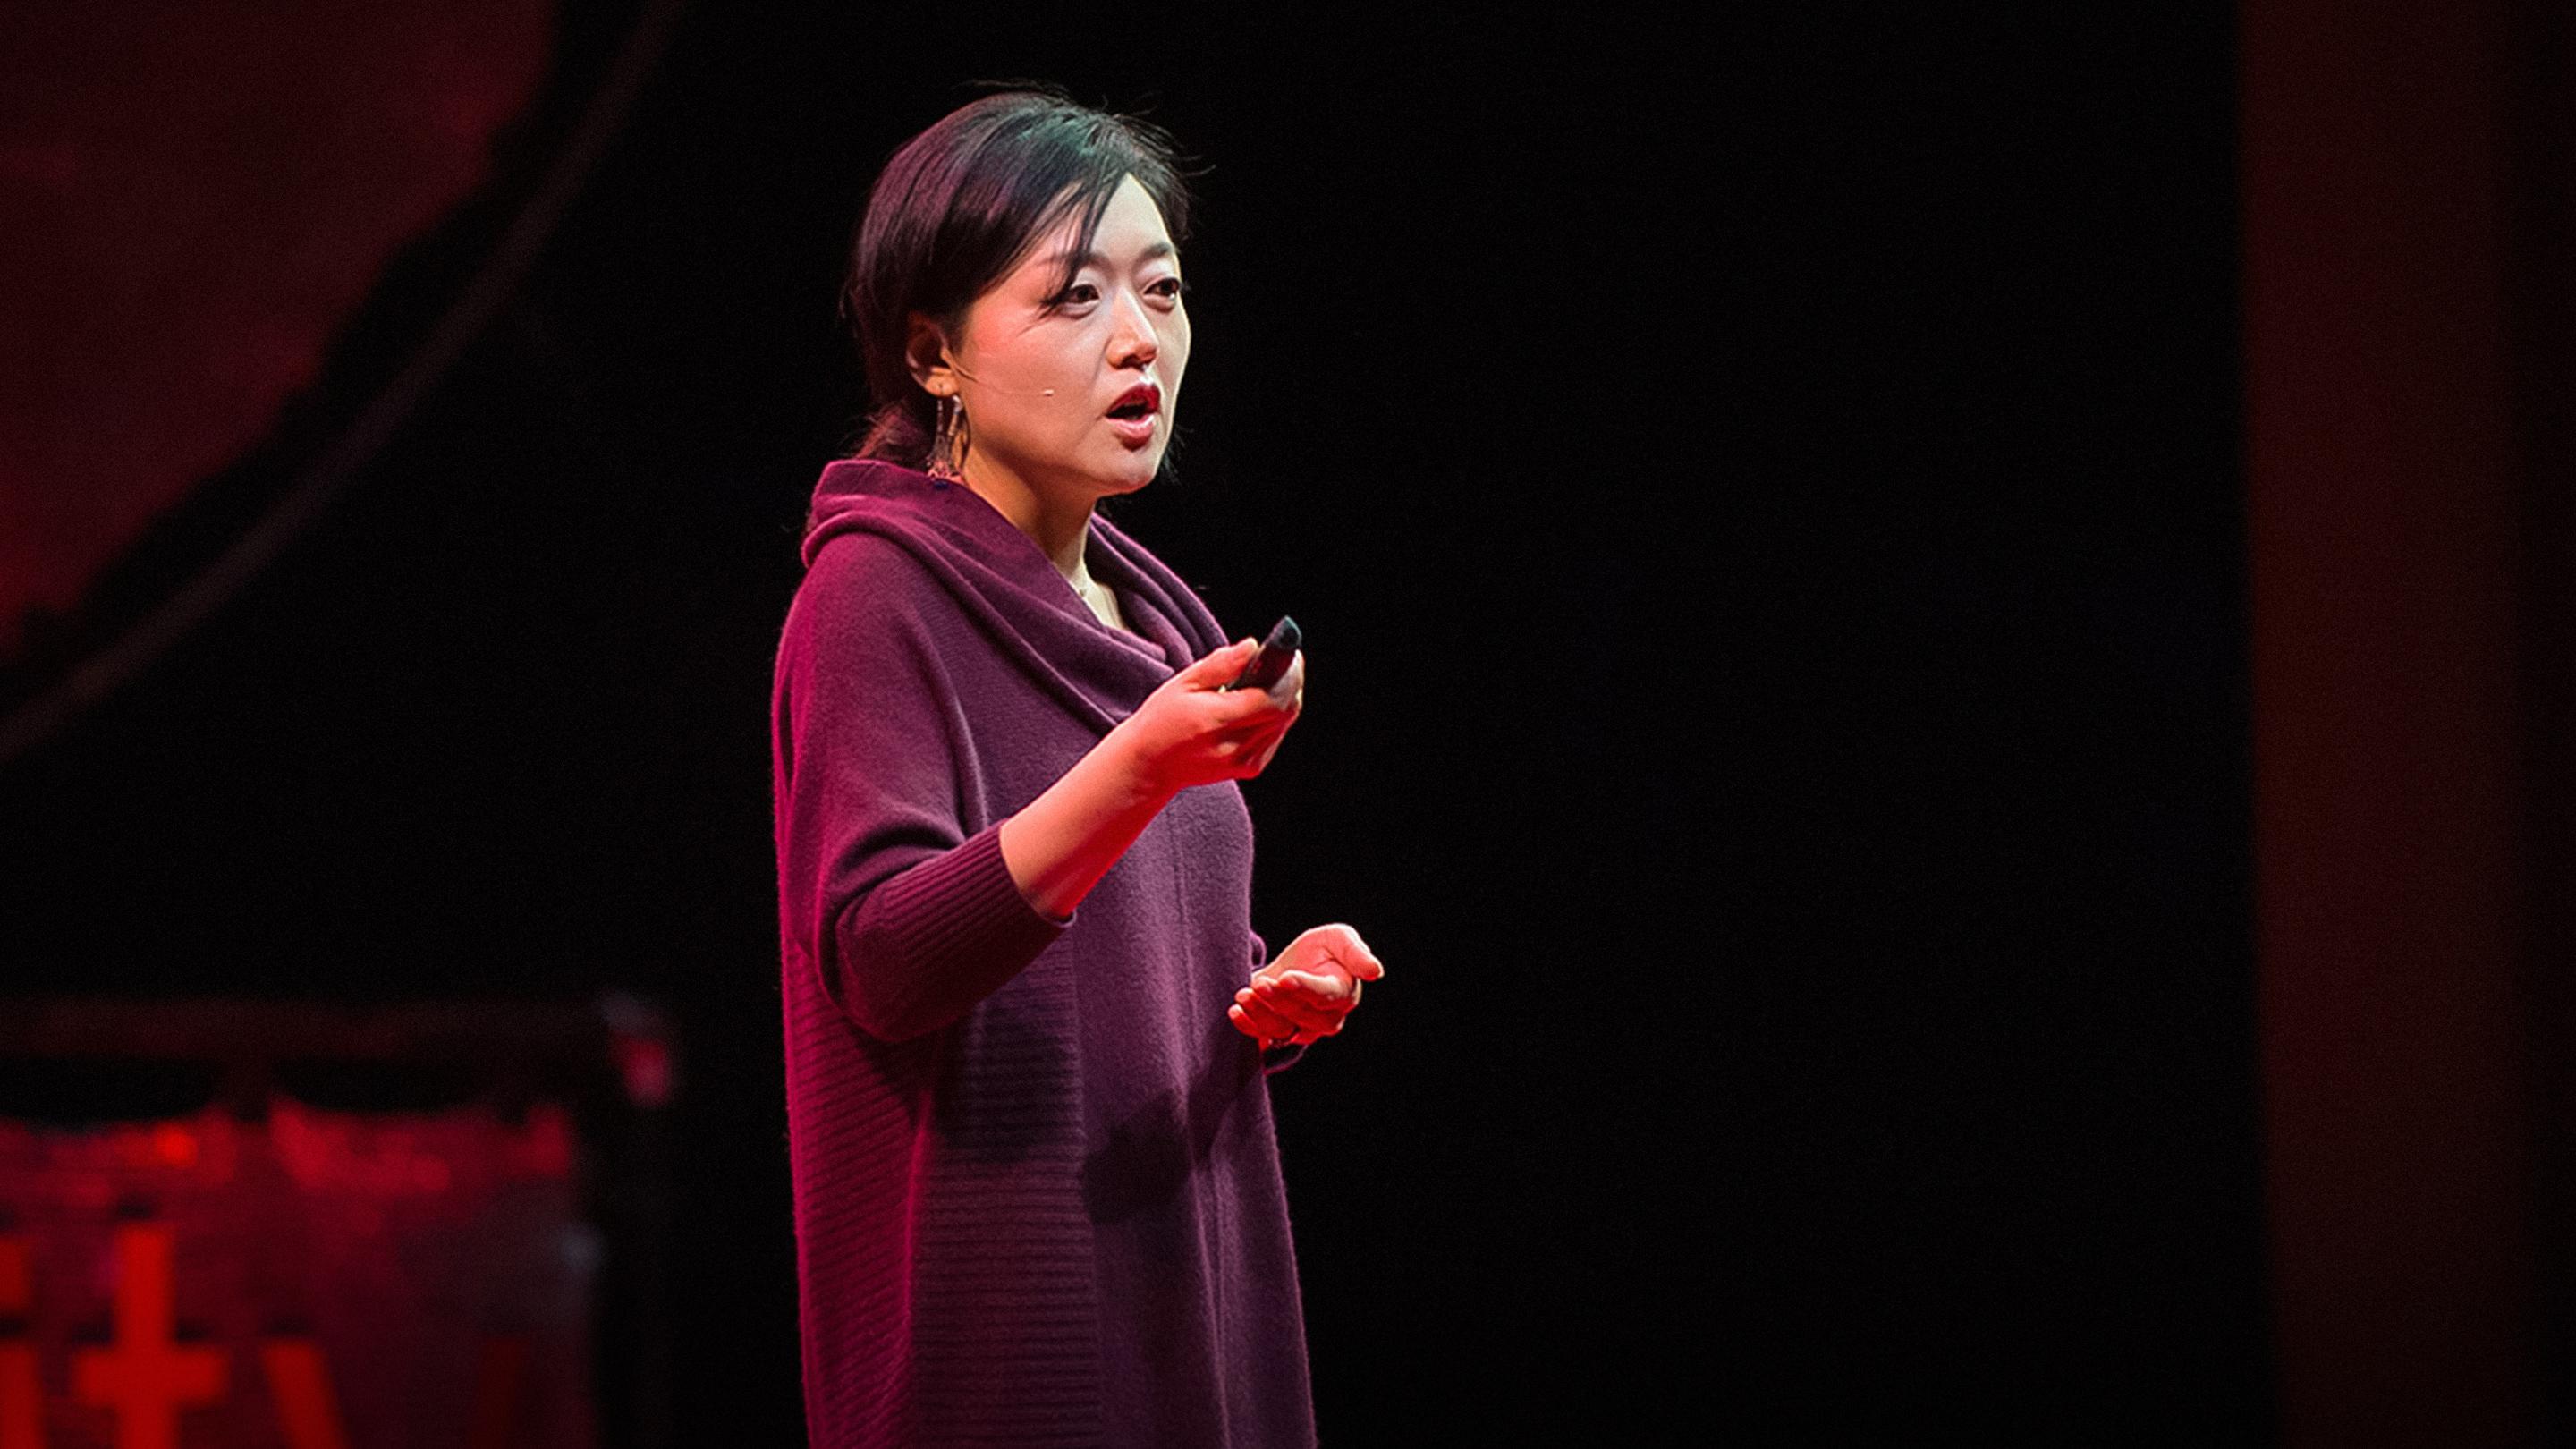 Ce que j’ai appris en tant que prisonnière en Corée du Nord | Euna Lee